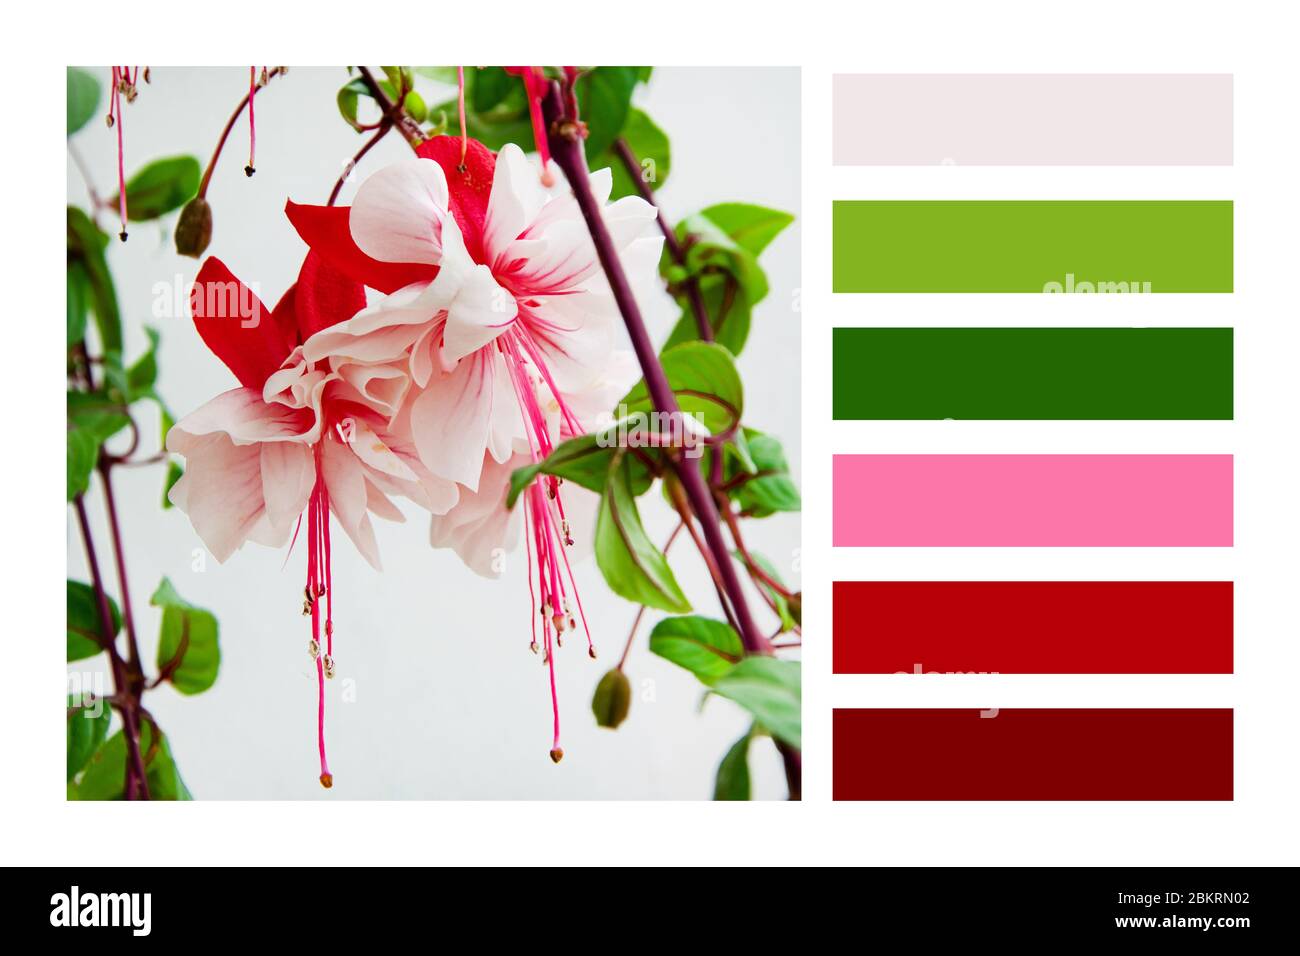 Vue rapprochée de la magnifique plante Fuchsia dans une palette de couleurs, avec des nuances de couleurs gratuites Banque D'Images